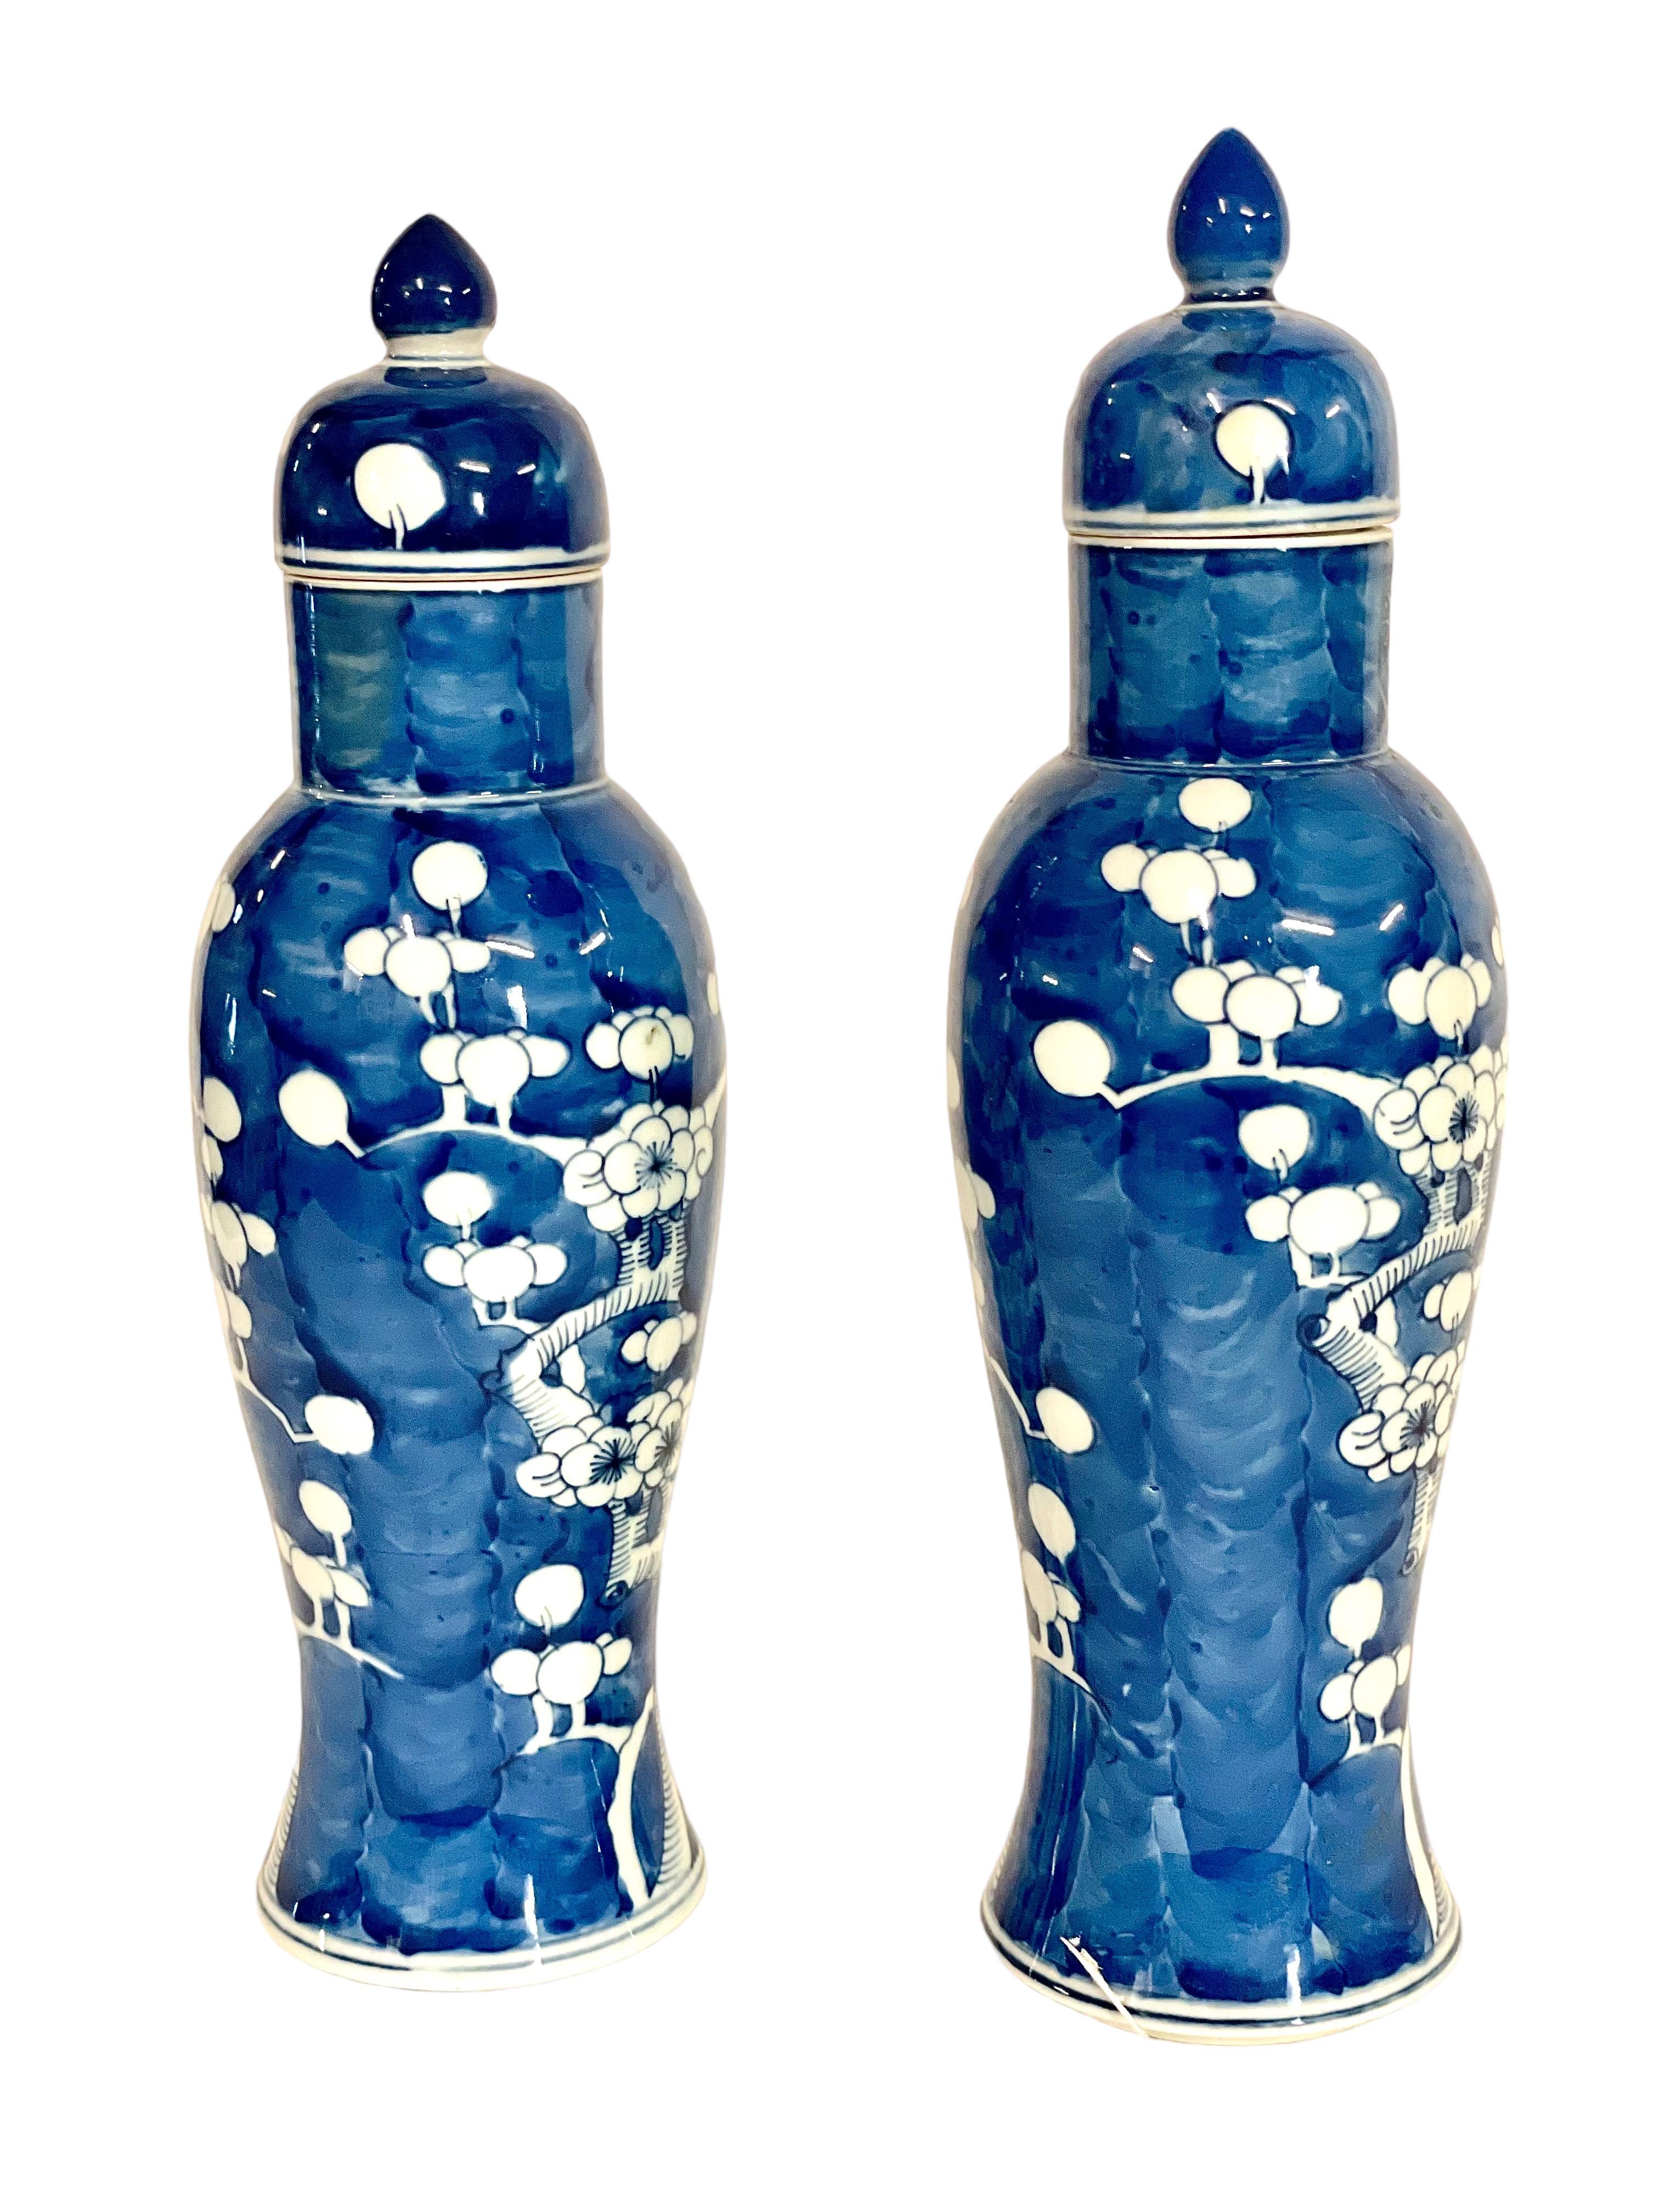 Exquise paire de vases à couvercle en porcelaine chinoise, de forme balustre et magnifiquement peints à la main d'un décor traditionnel de branches entrelacées de prunus en fleurs blanches sur un fond bleu profond. Les couvercles sont bien ajustés